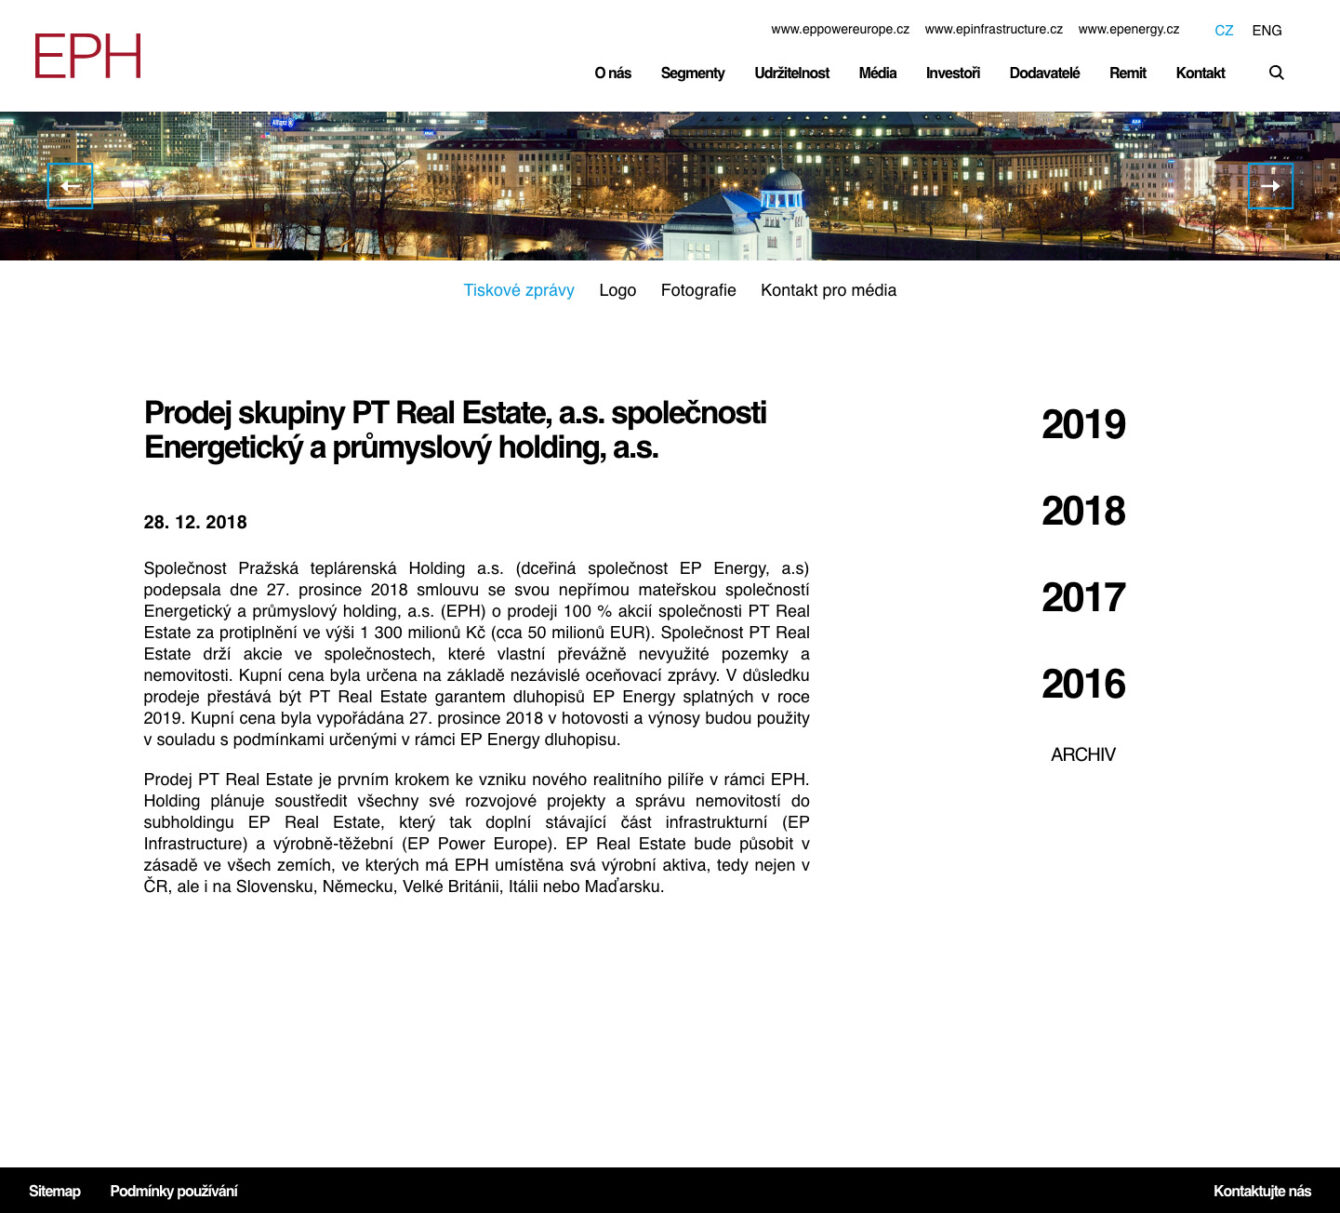 EPH web design